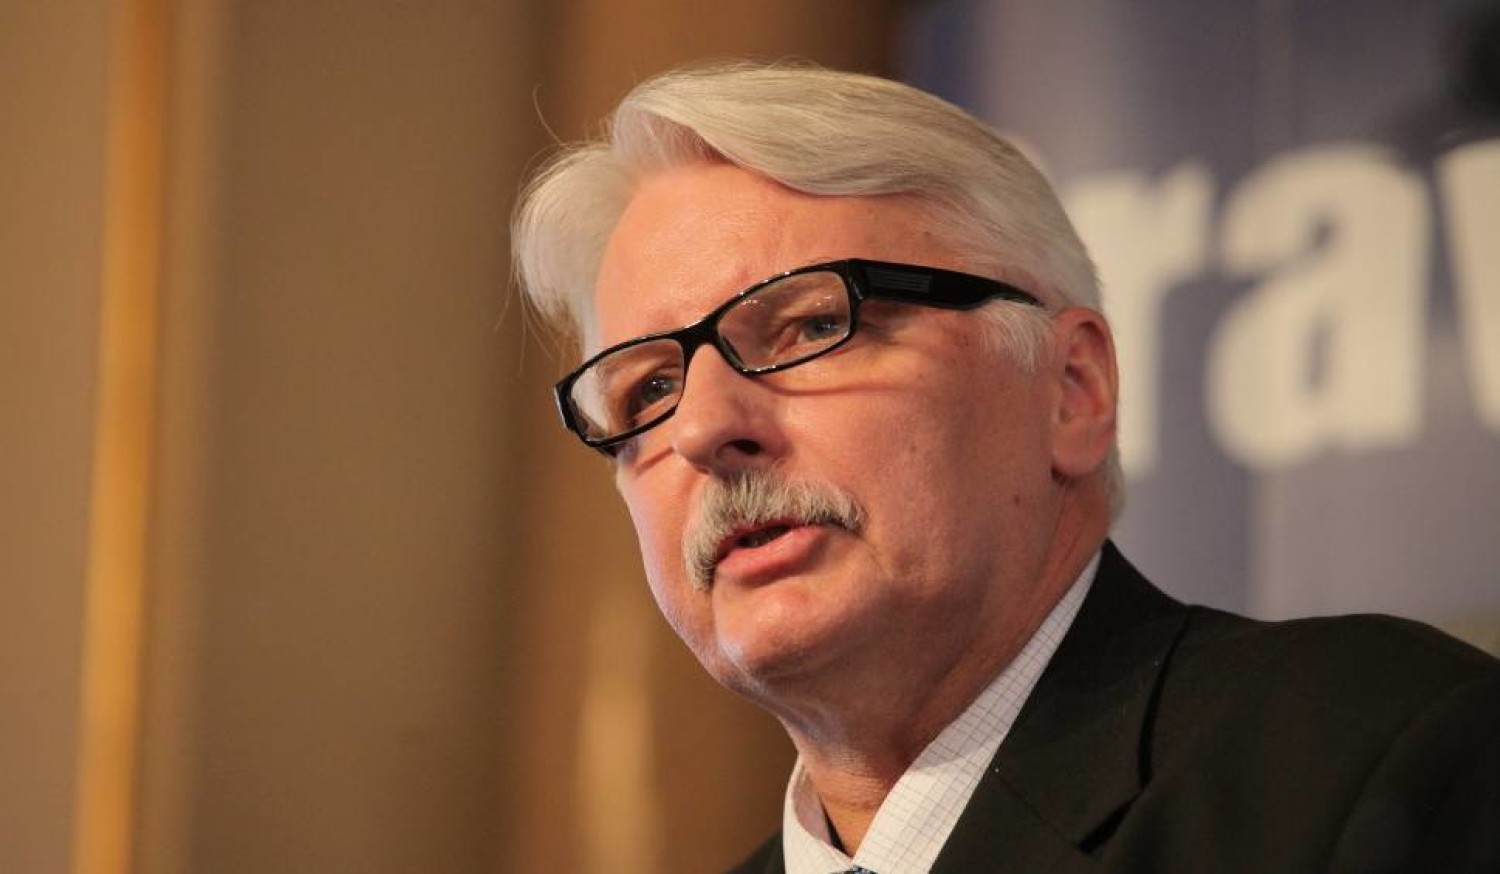 لهستان: اتحاديه اروپا در خروج بريتانيا از اين نهاد مقصر است